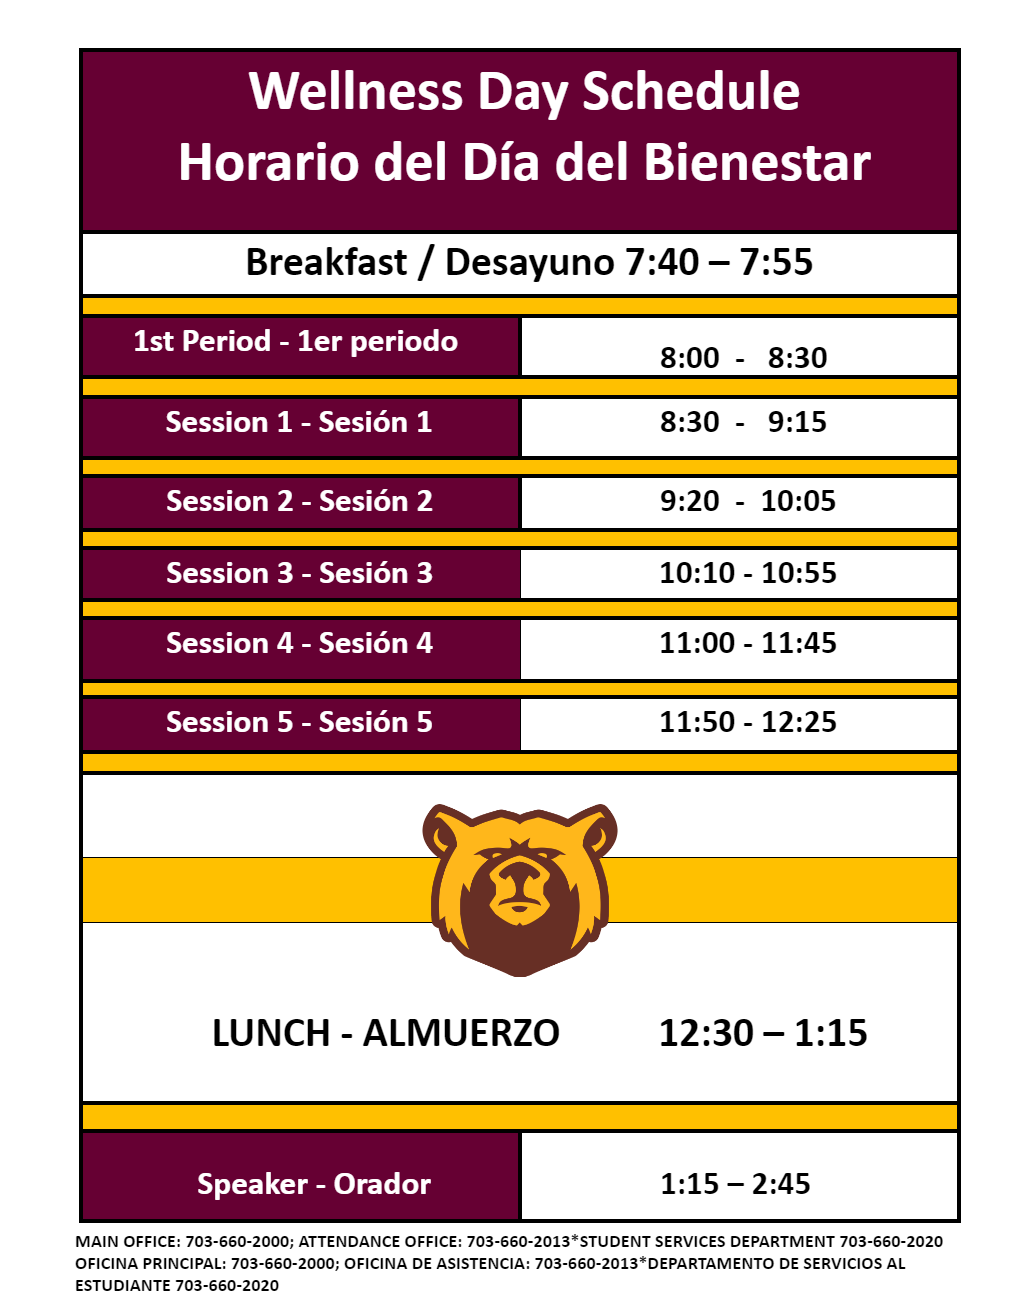 Wellness Day Schedule English & Espanol